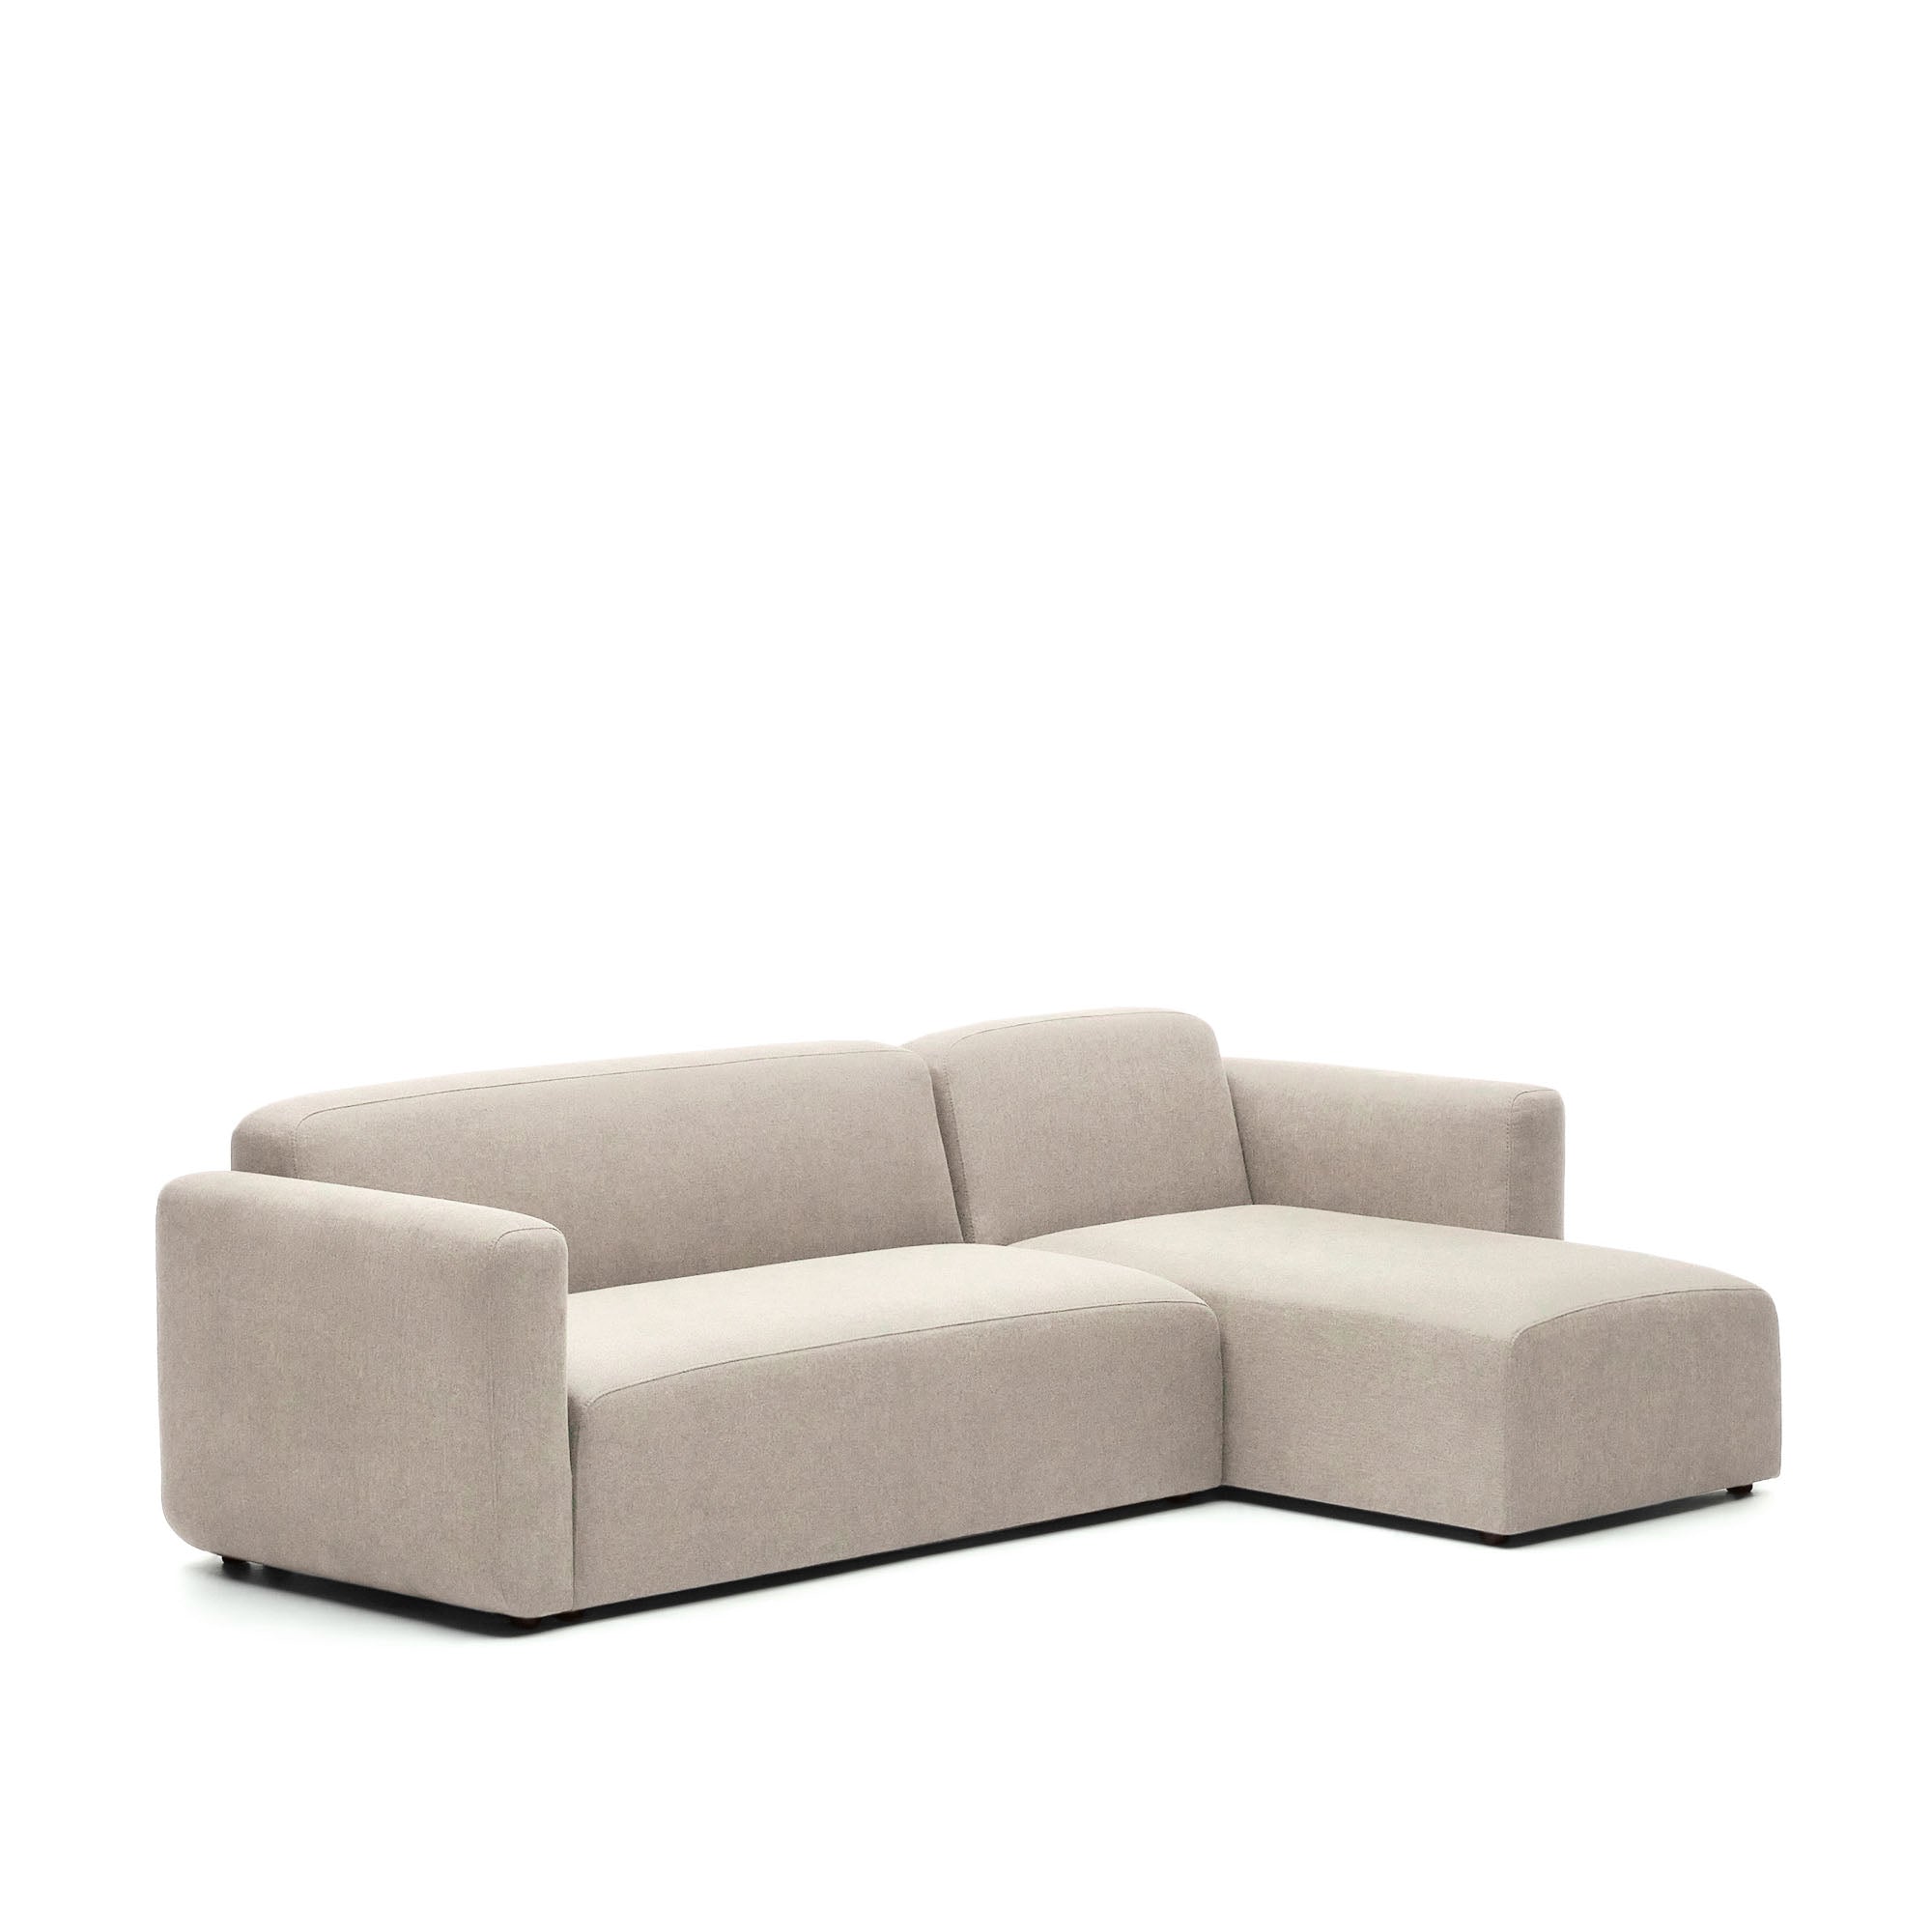 Neom 3 személyes moduláris kanapé, jobb/bal oldali fekvőgarnitúra, bézs színben, 263 cm